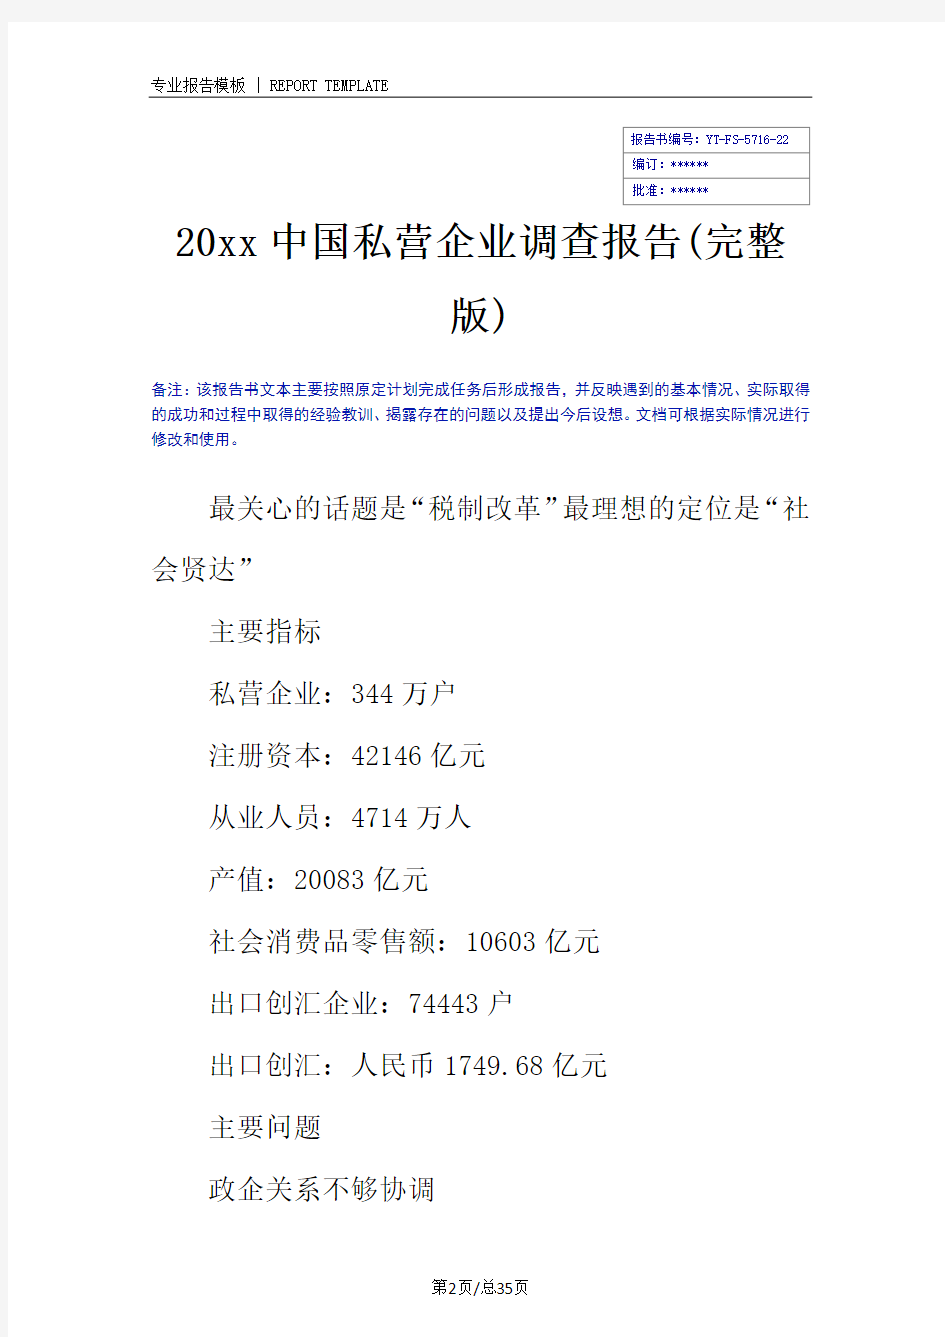 20xx中国私营企业调查报告(完整版)